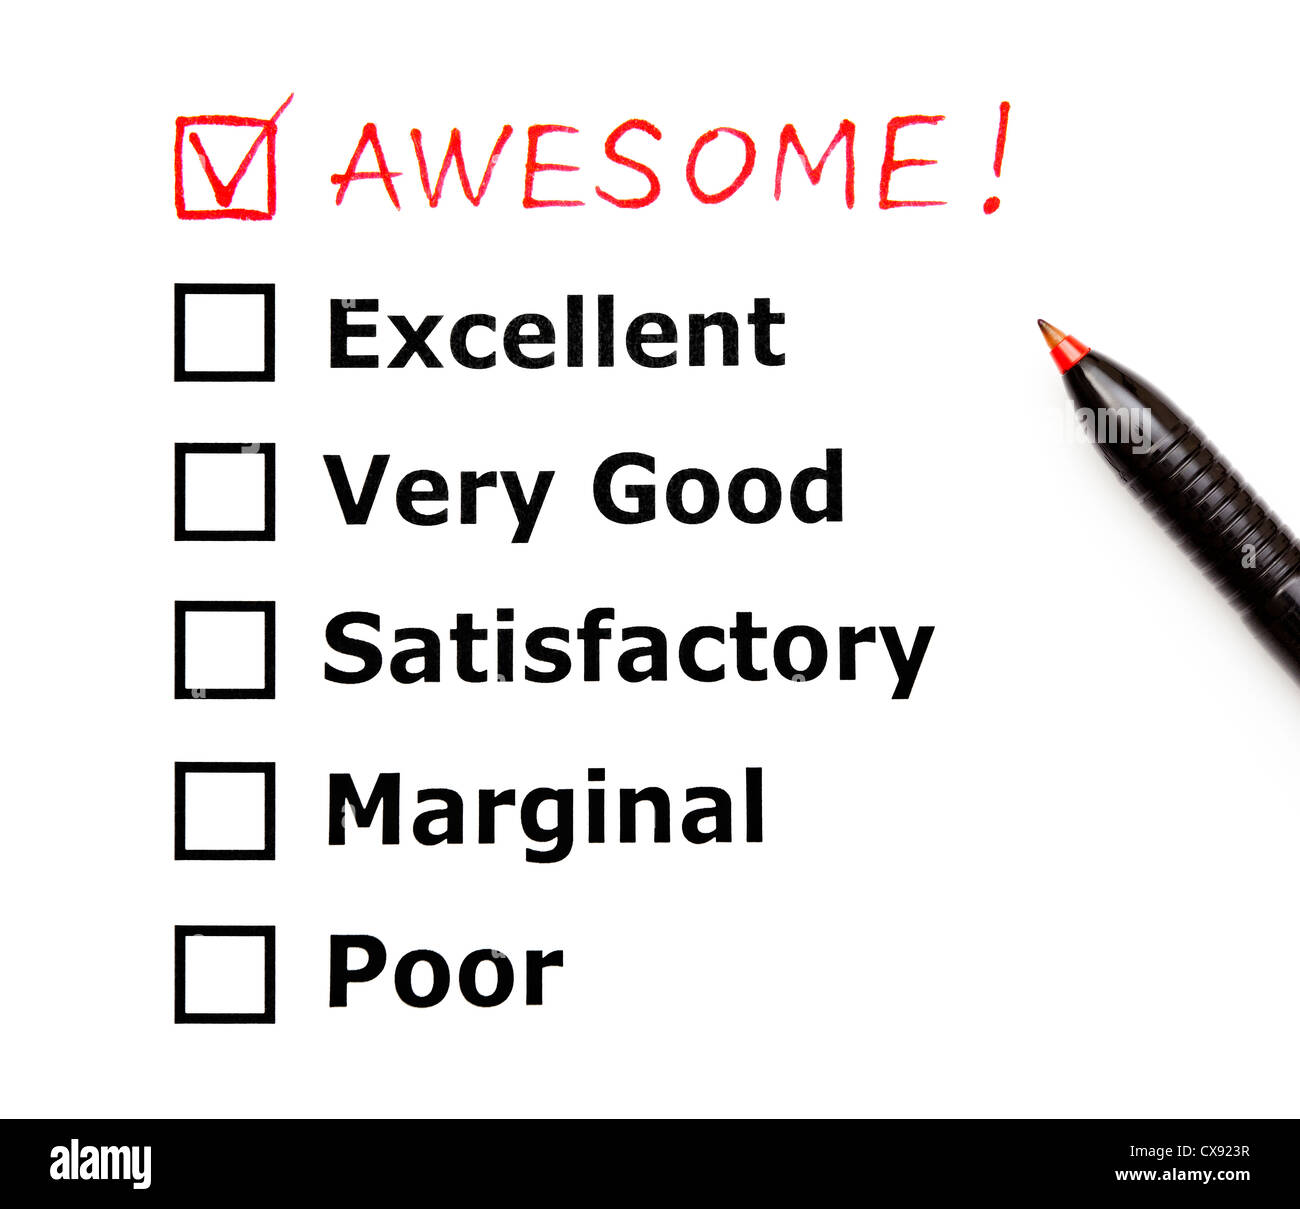 Awesome mit rotem Stift auf eine Kunden-Bewertungsformular hinzugefügt Stockfoto